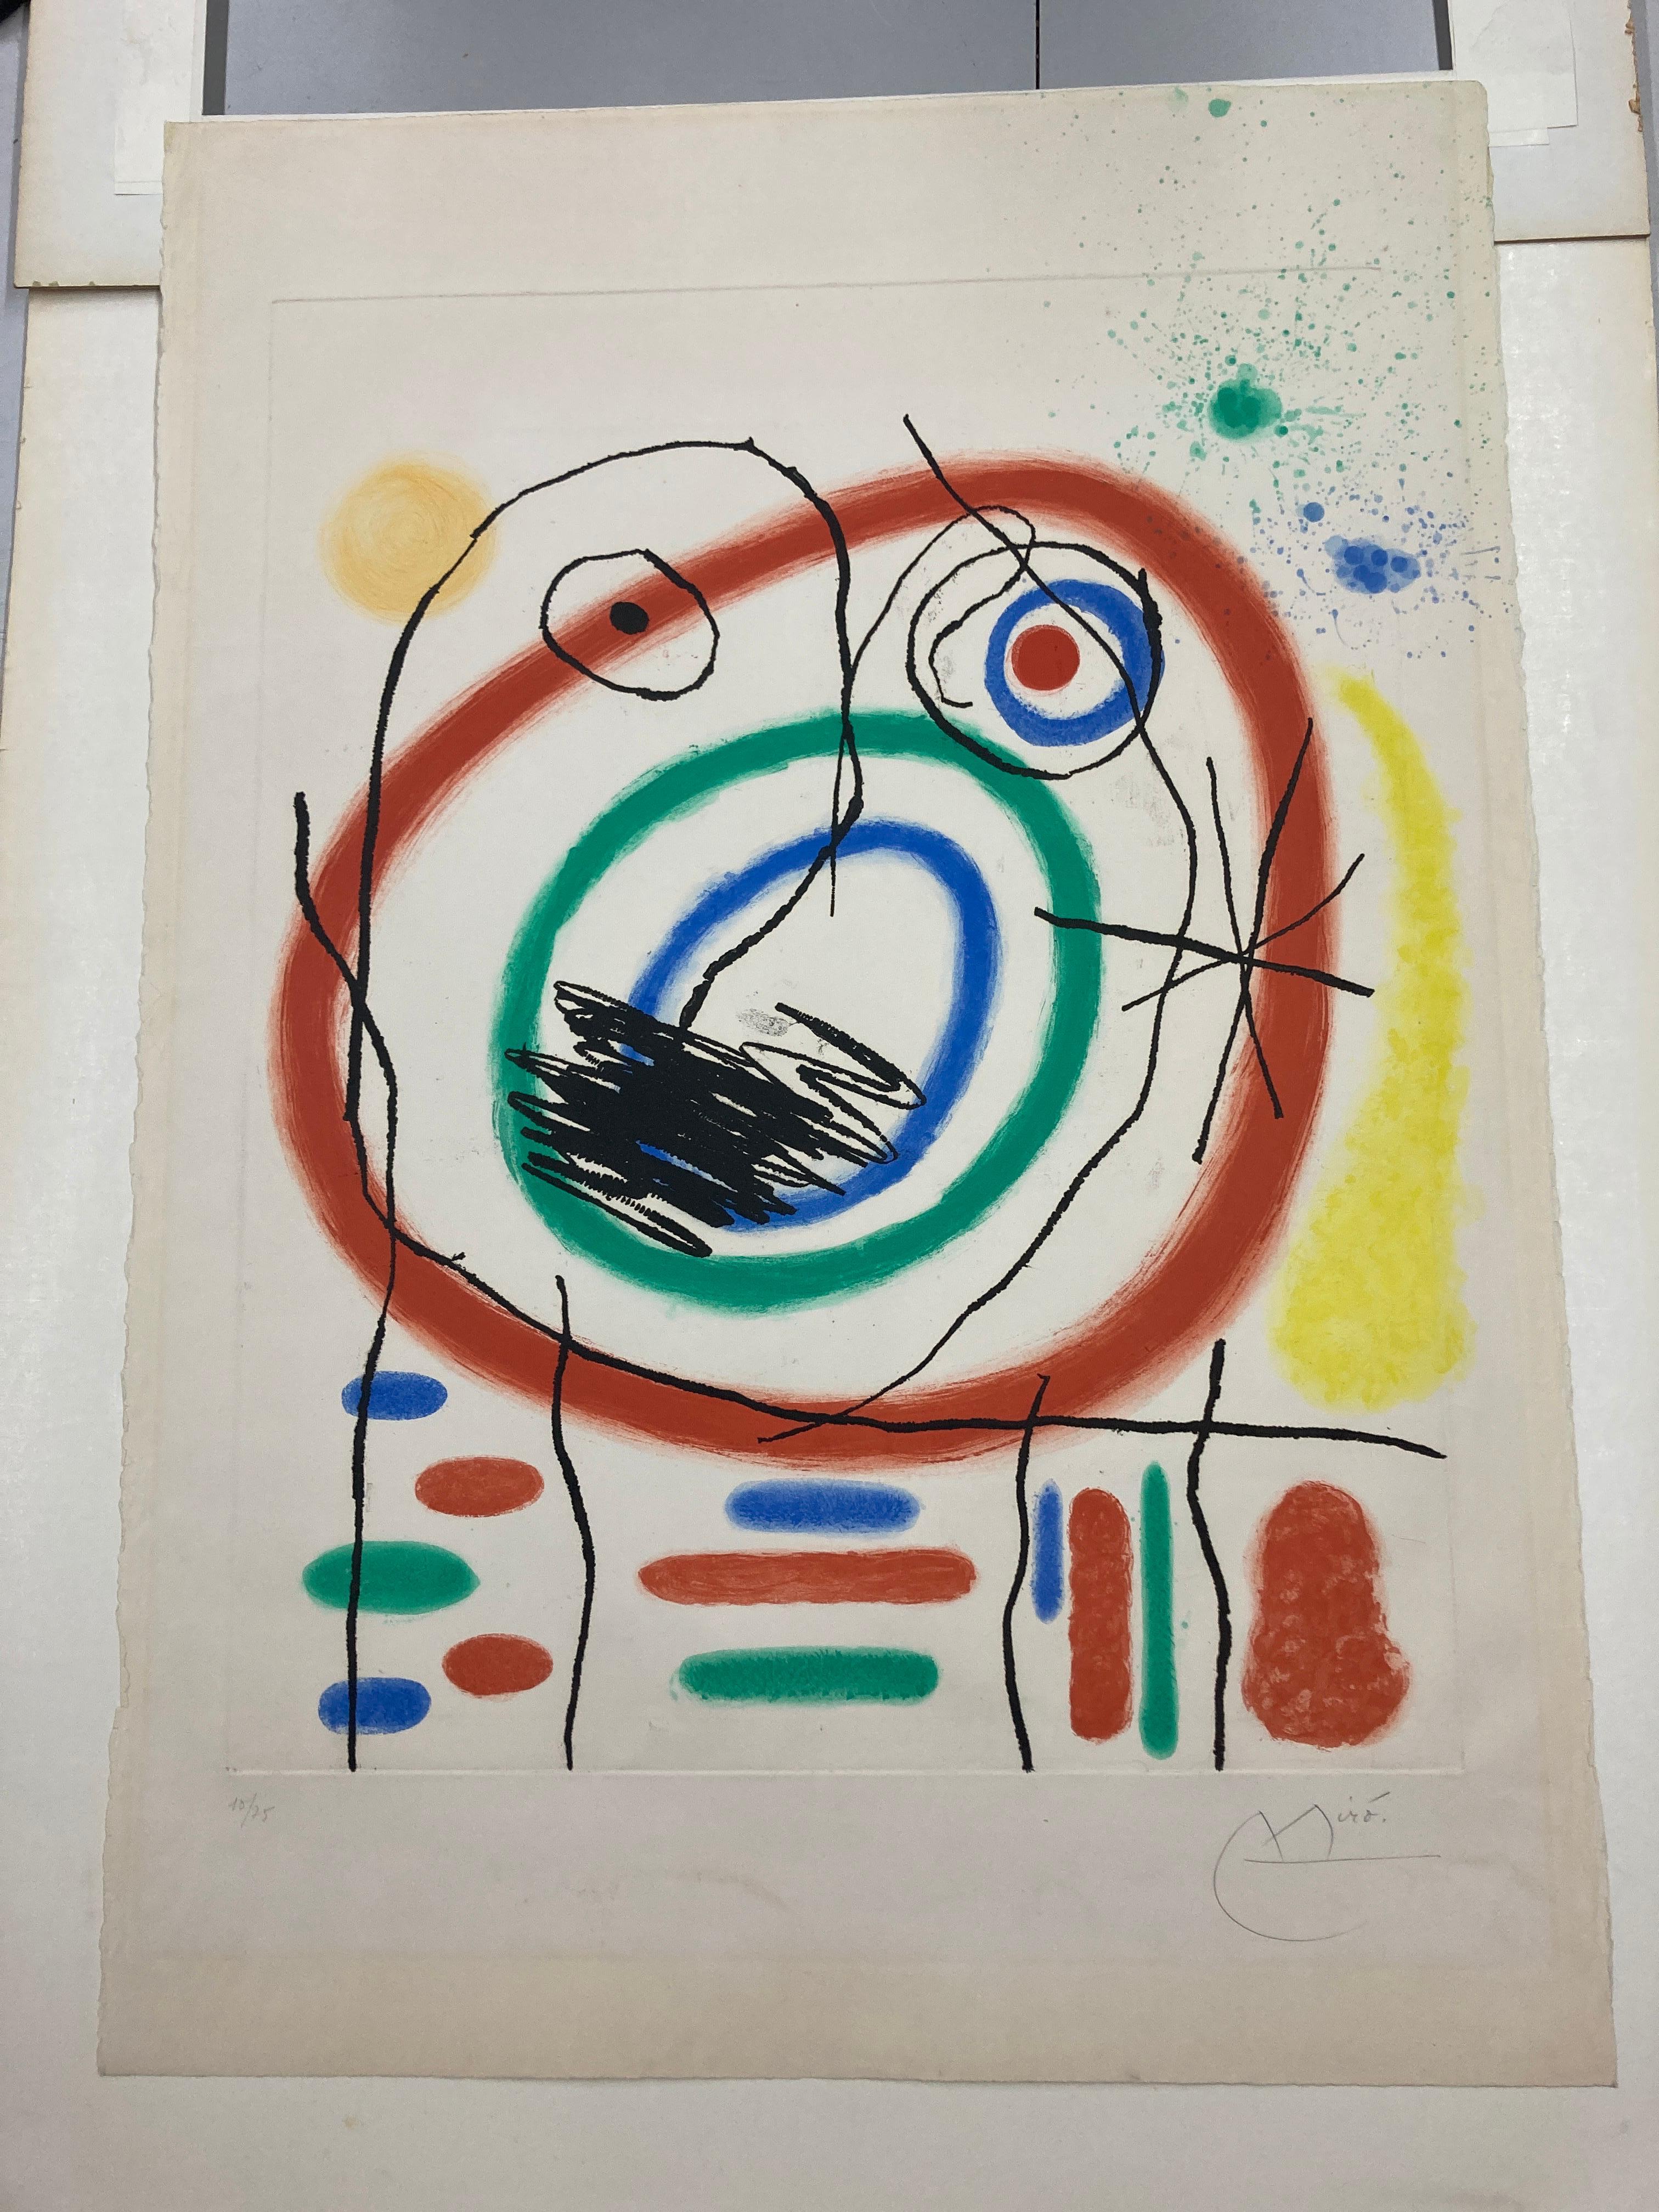 Le Prophète Encerclé - Print by Joan Miró